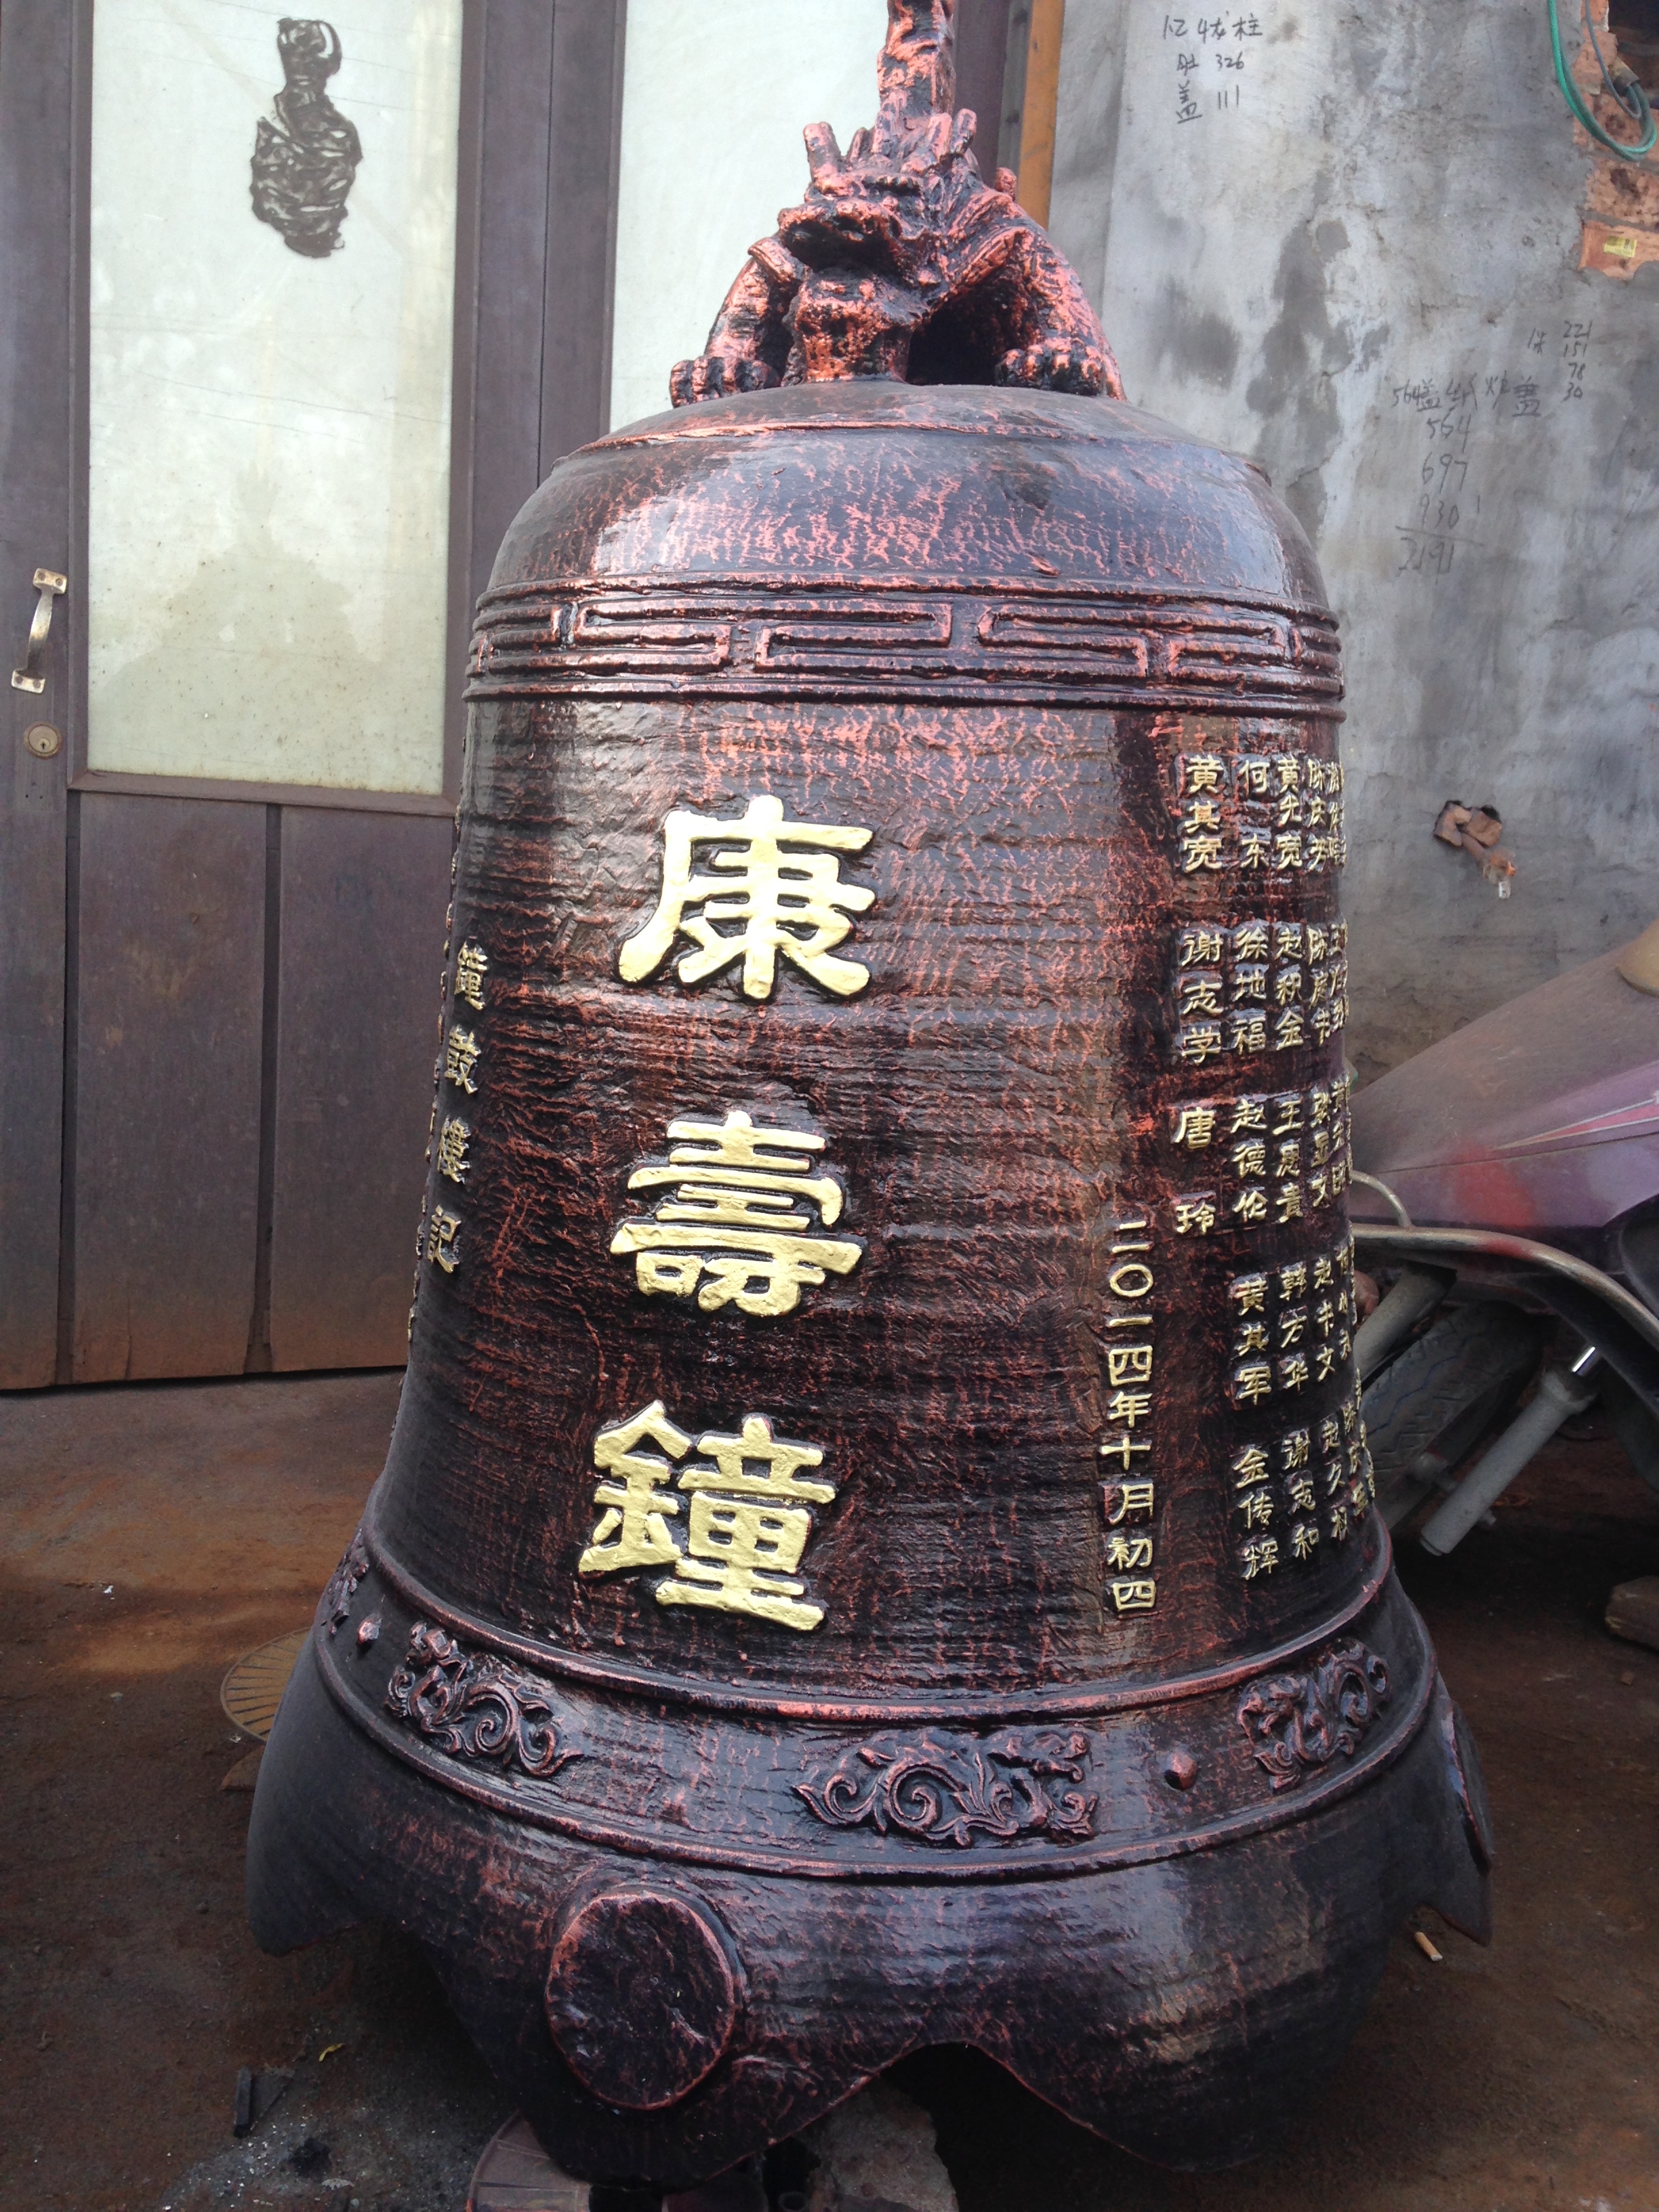 铁钟，温州慈宏法器生产铸造祠堂铁钟，历代仿古铁钟，钟楼铁钟